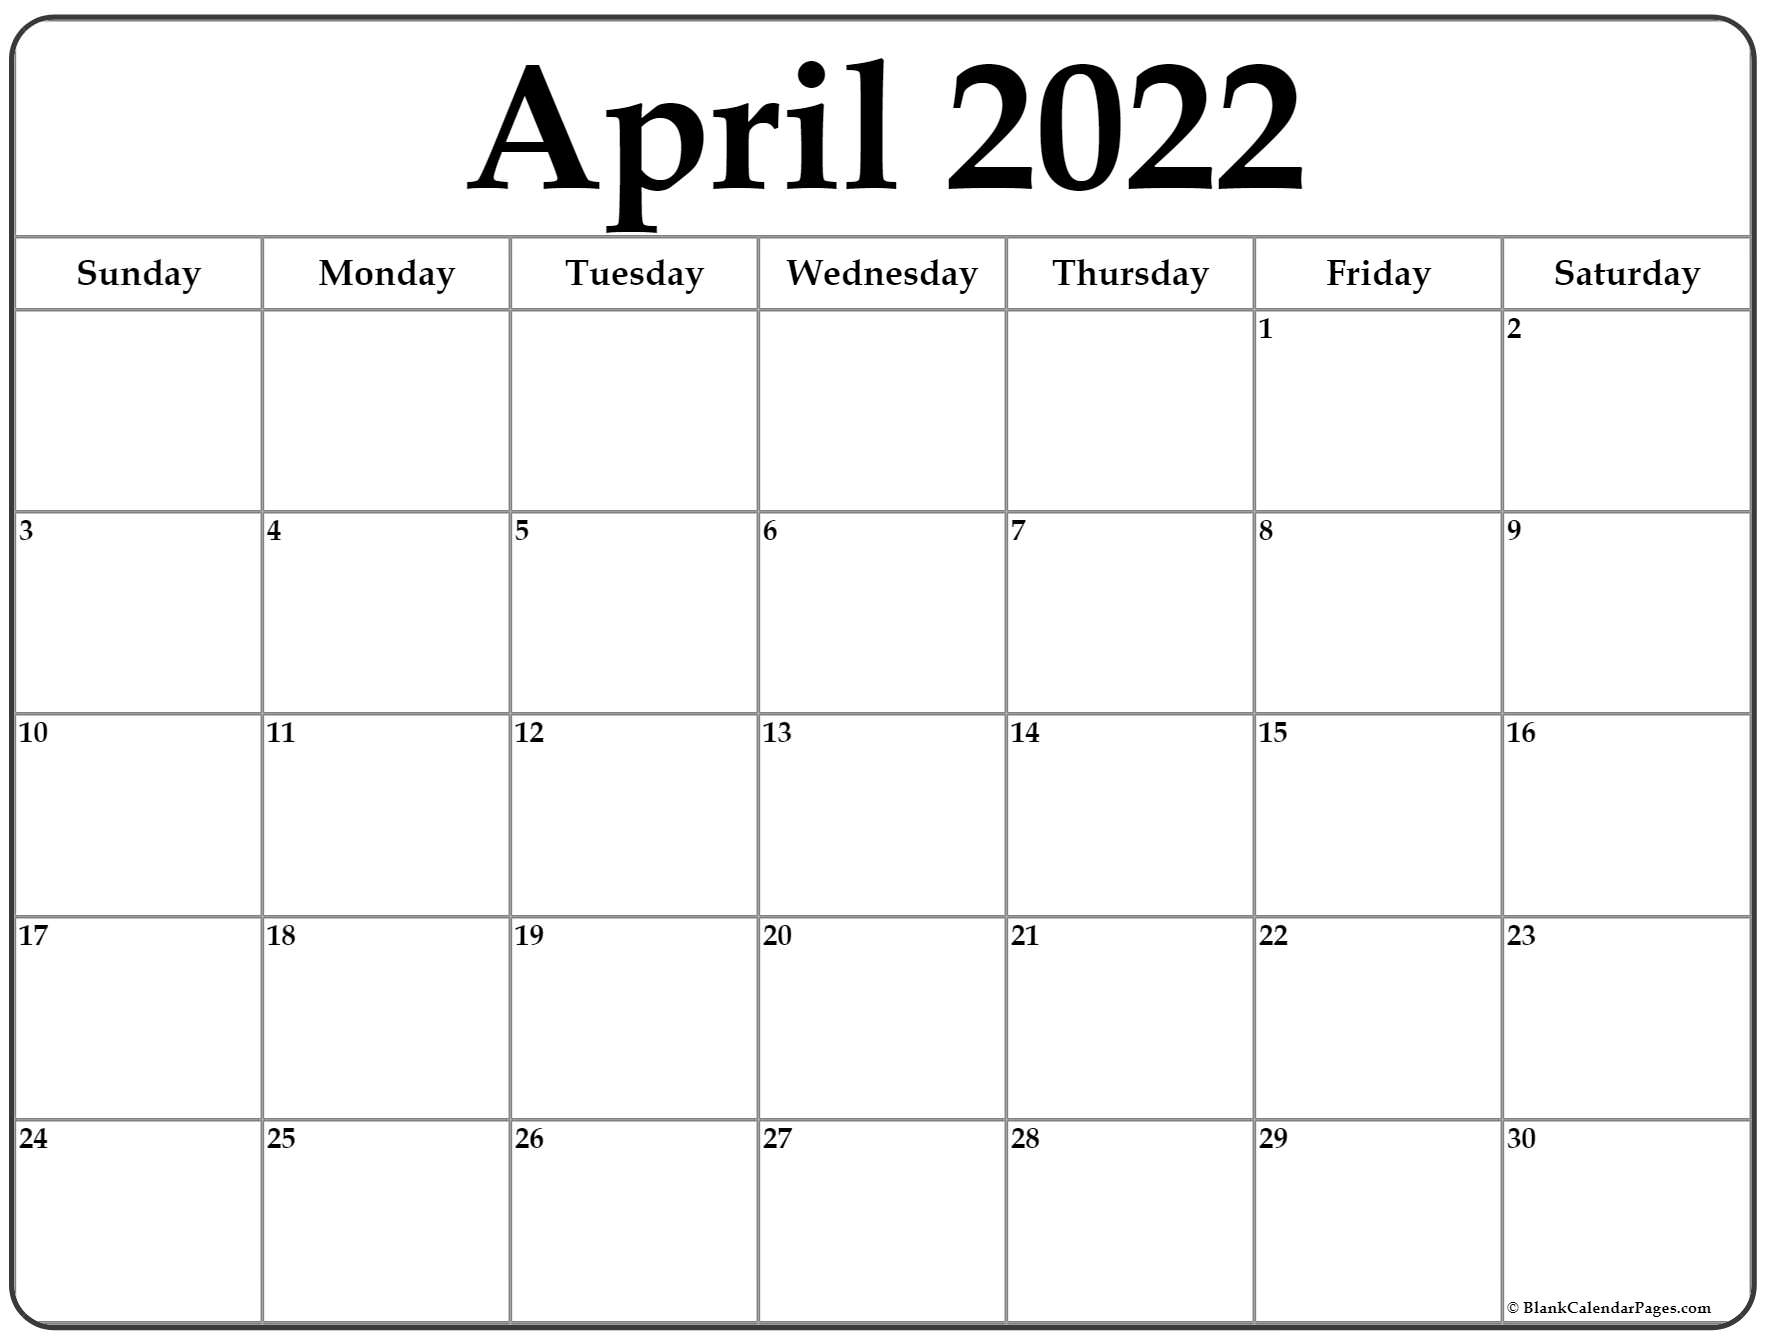 Collect Prokerala Calendar 2022 April